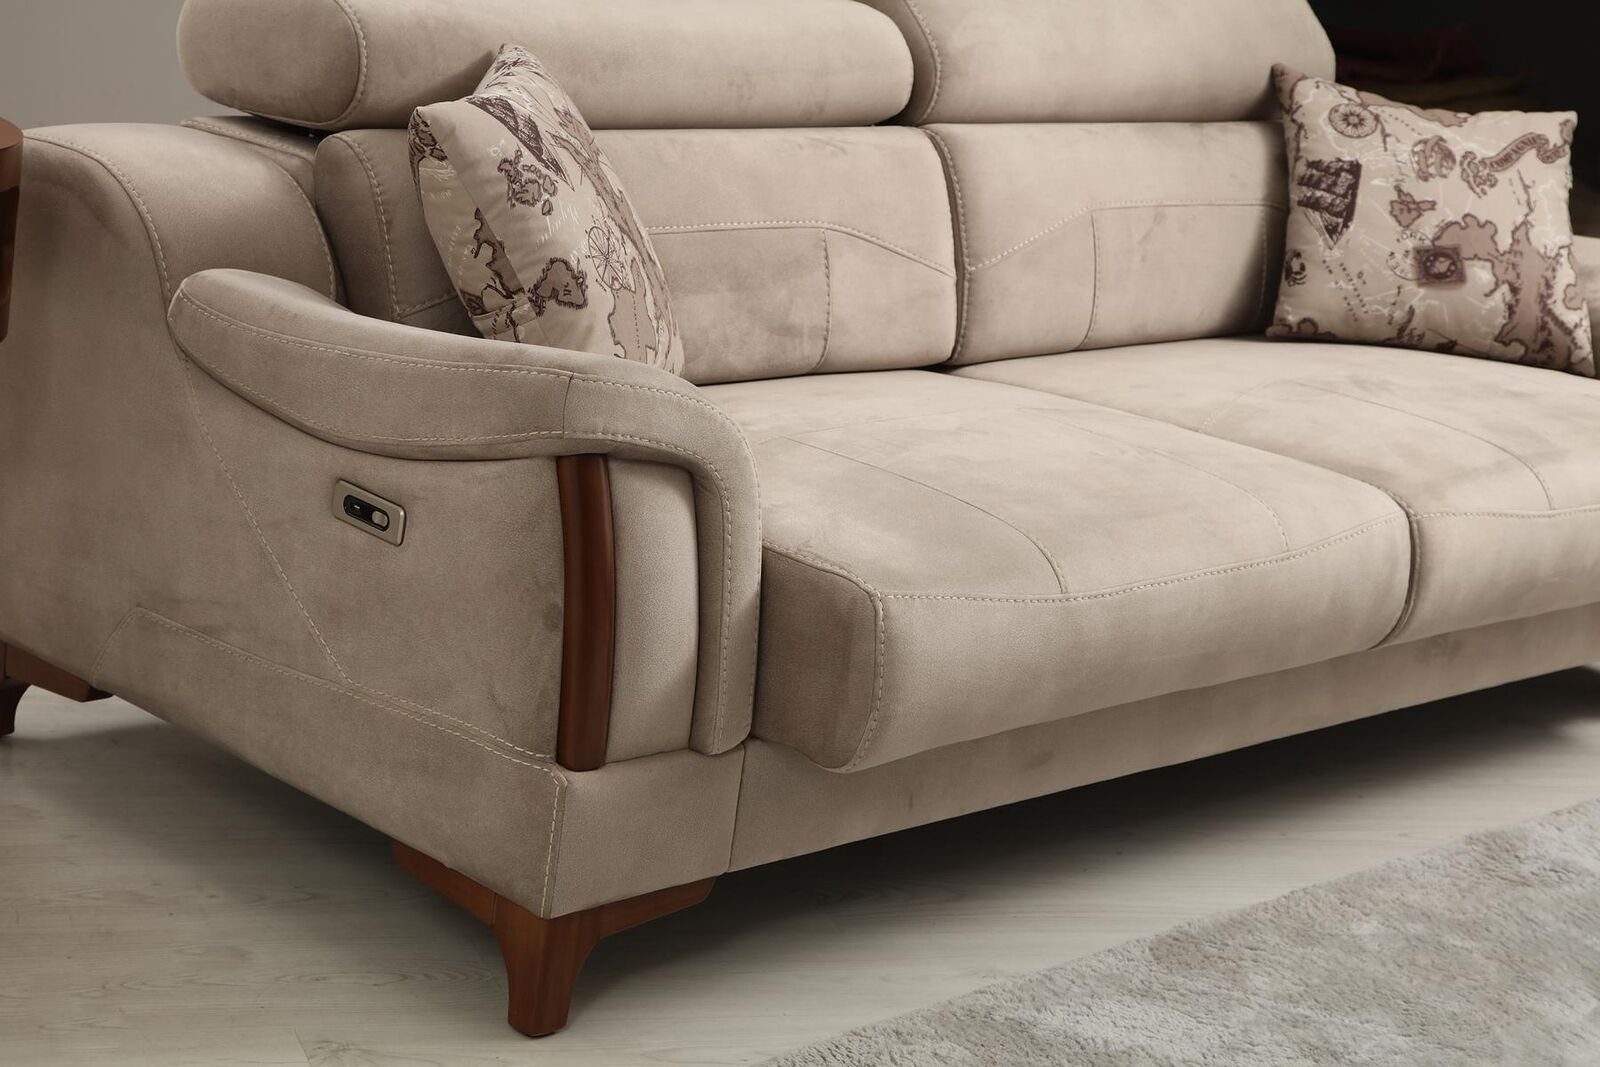 JVmoebel 3-Sitzer Möbel Europa in Textil, Wohnzimmer Teile, Modern Made Sofa 1 Designer Polster